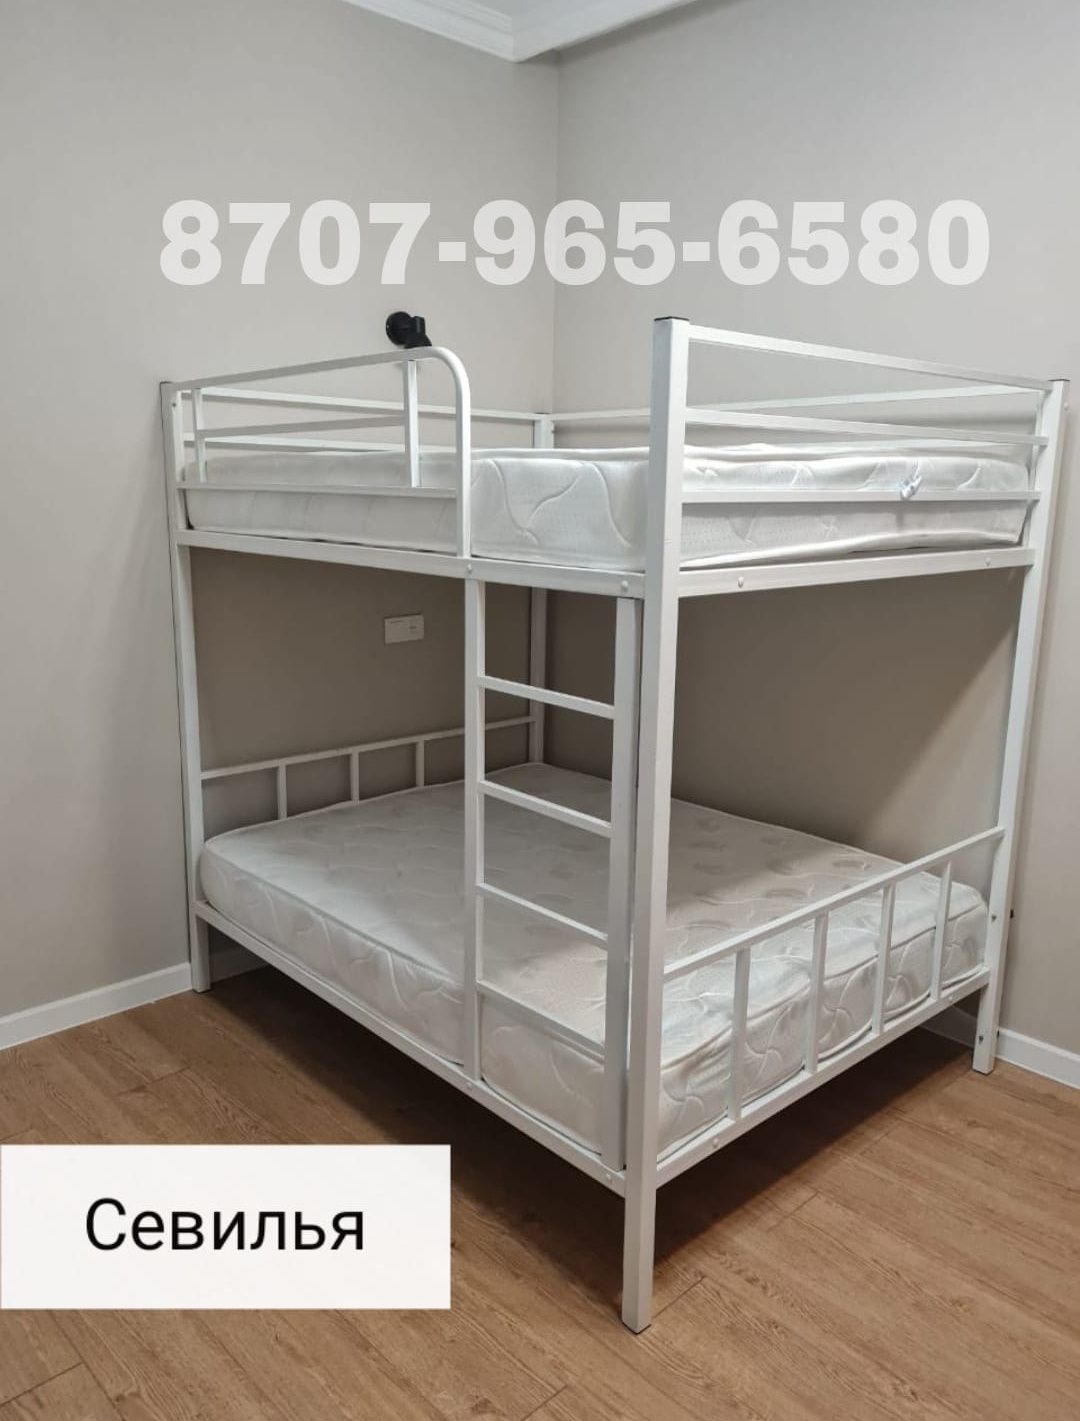 Двухъярусная кровать "Севилья" в Алматы. Доставка и сборка.